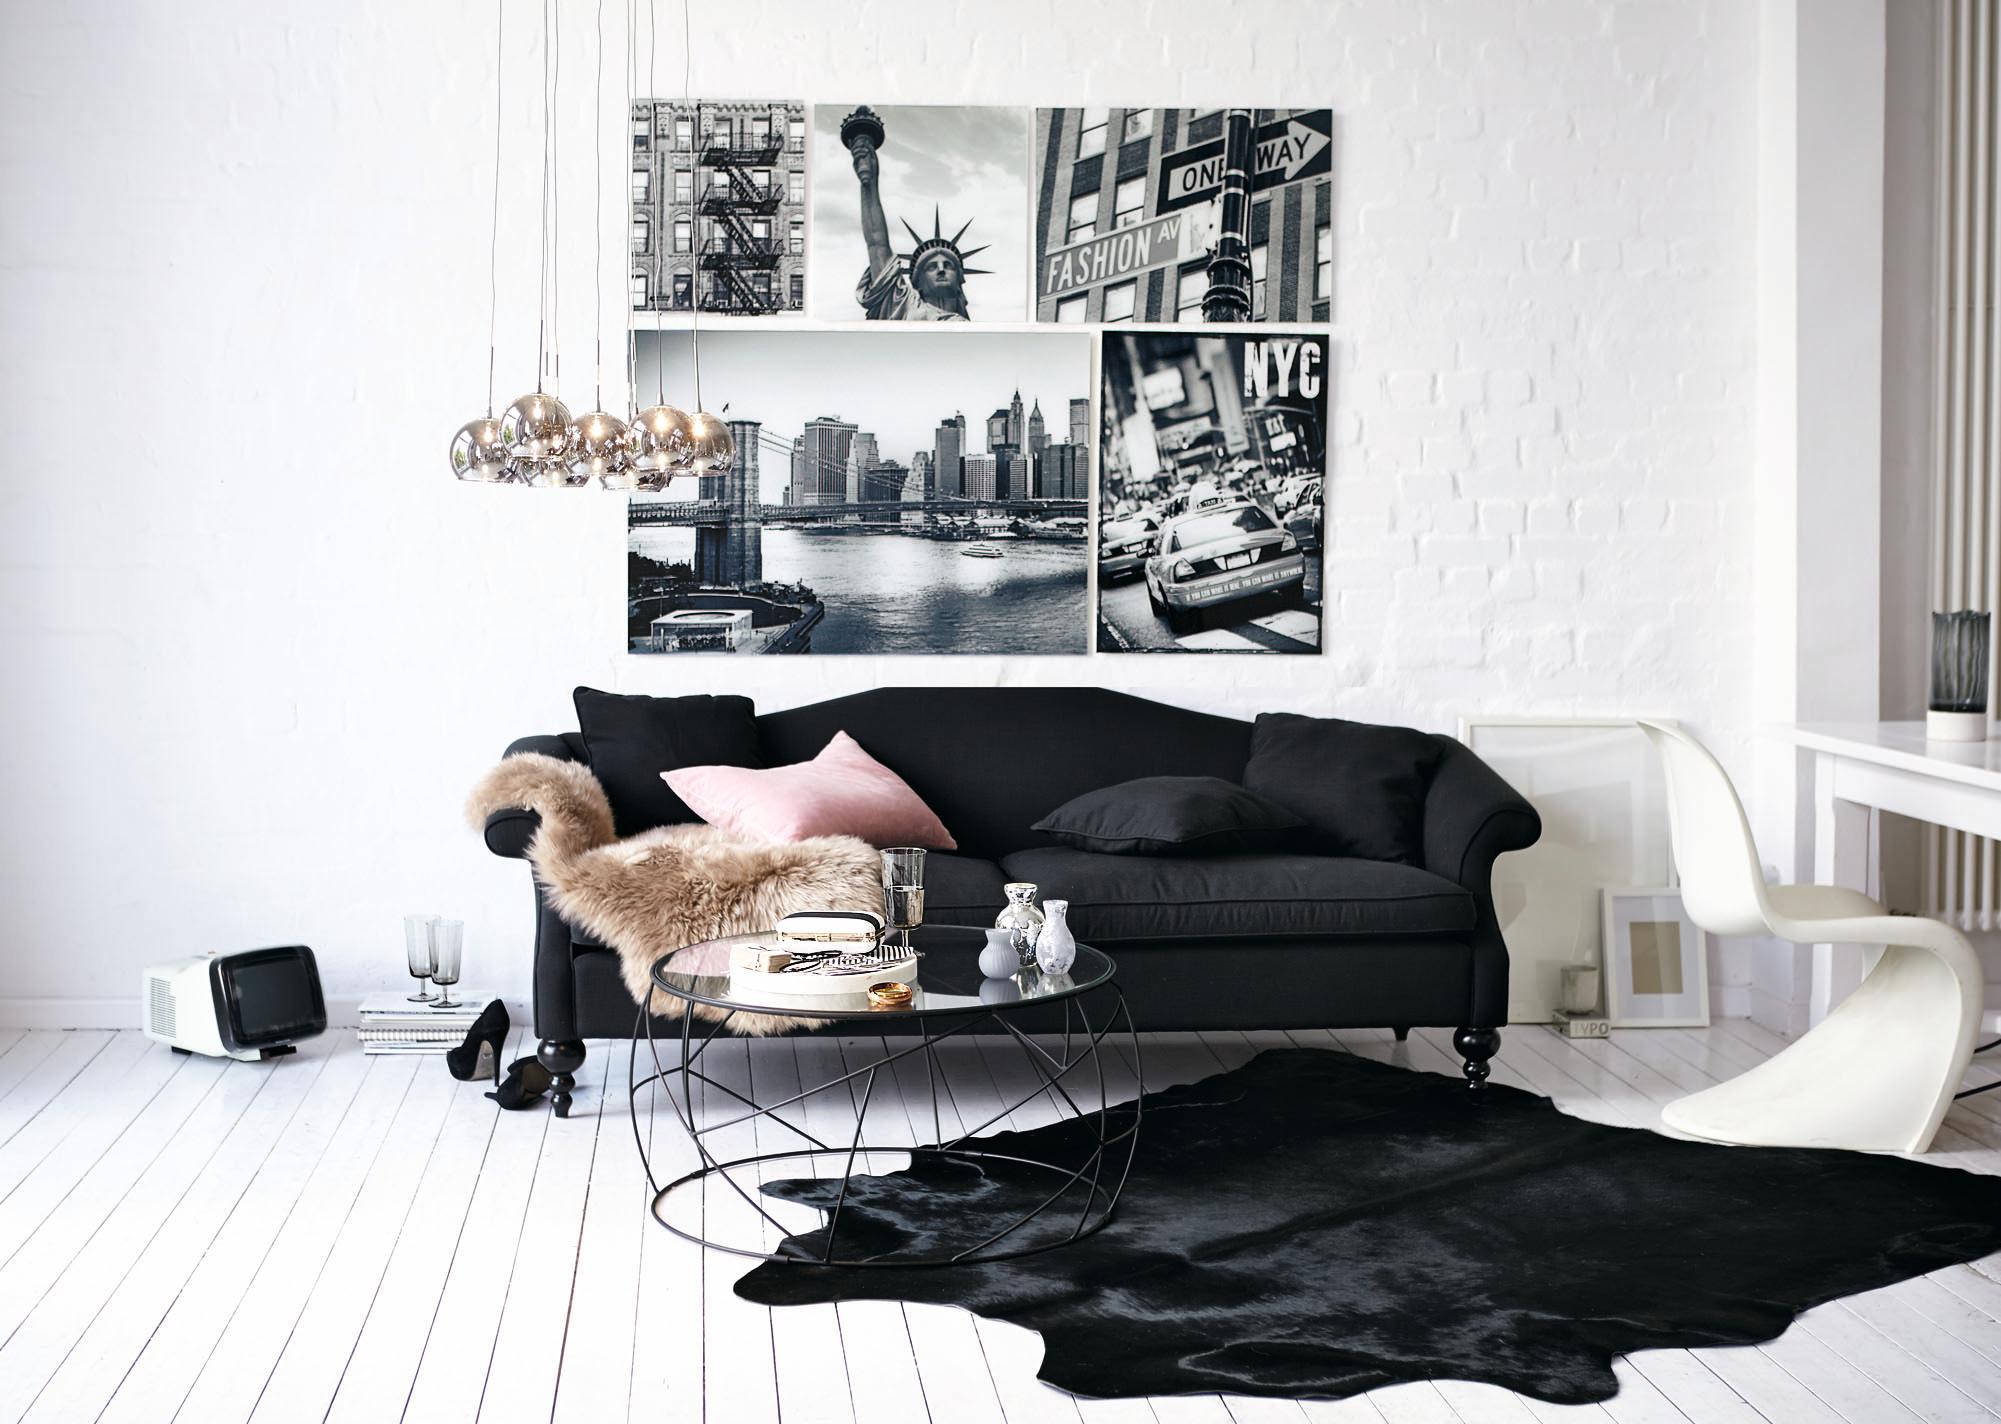 Schwarzes Sofa trifft auf weiße Dielen #couchtisch #pendelleuchte #sofa #glascouchtisch #newyork #zimmergestaltung ©Impressionen